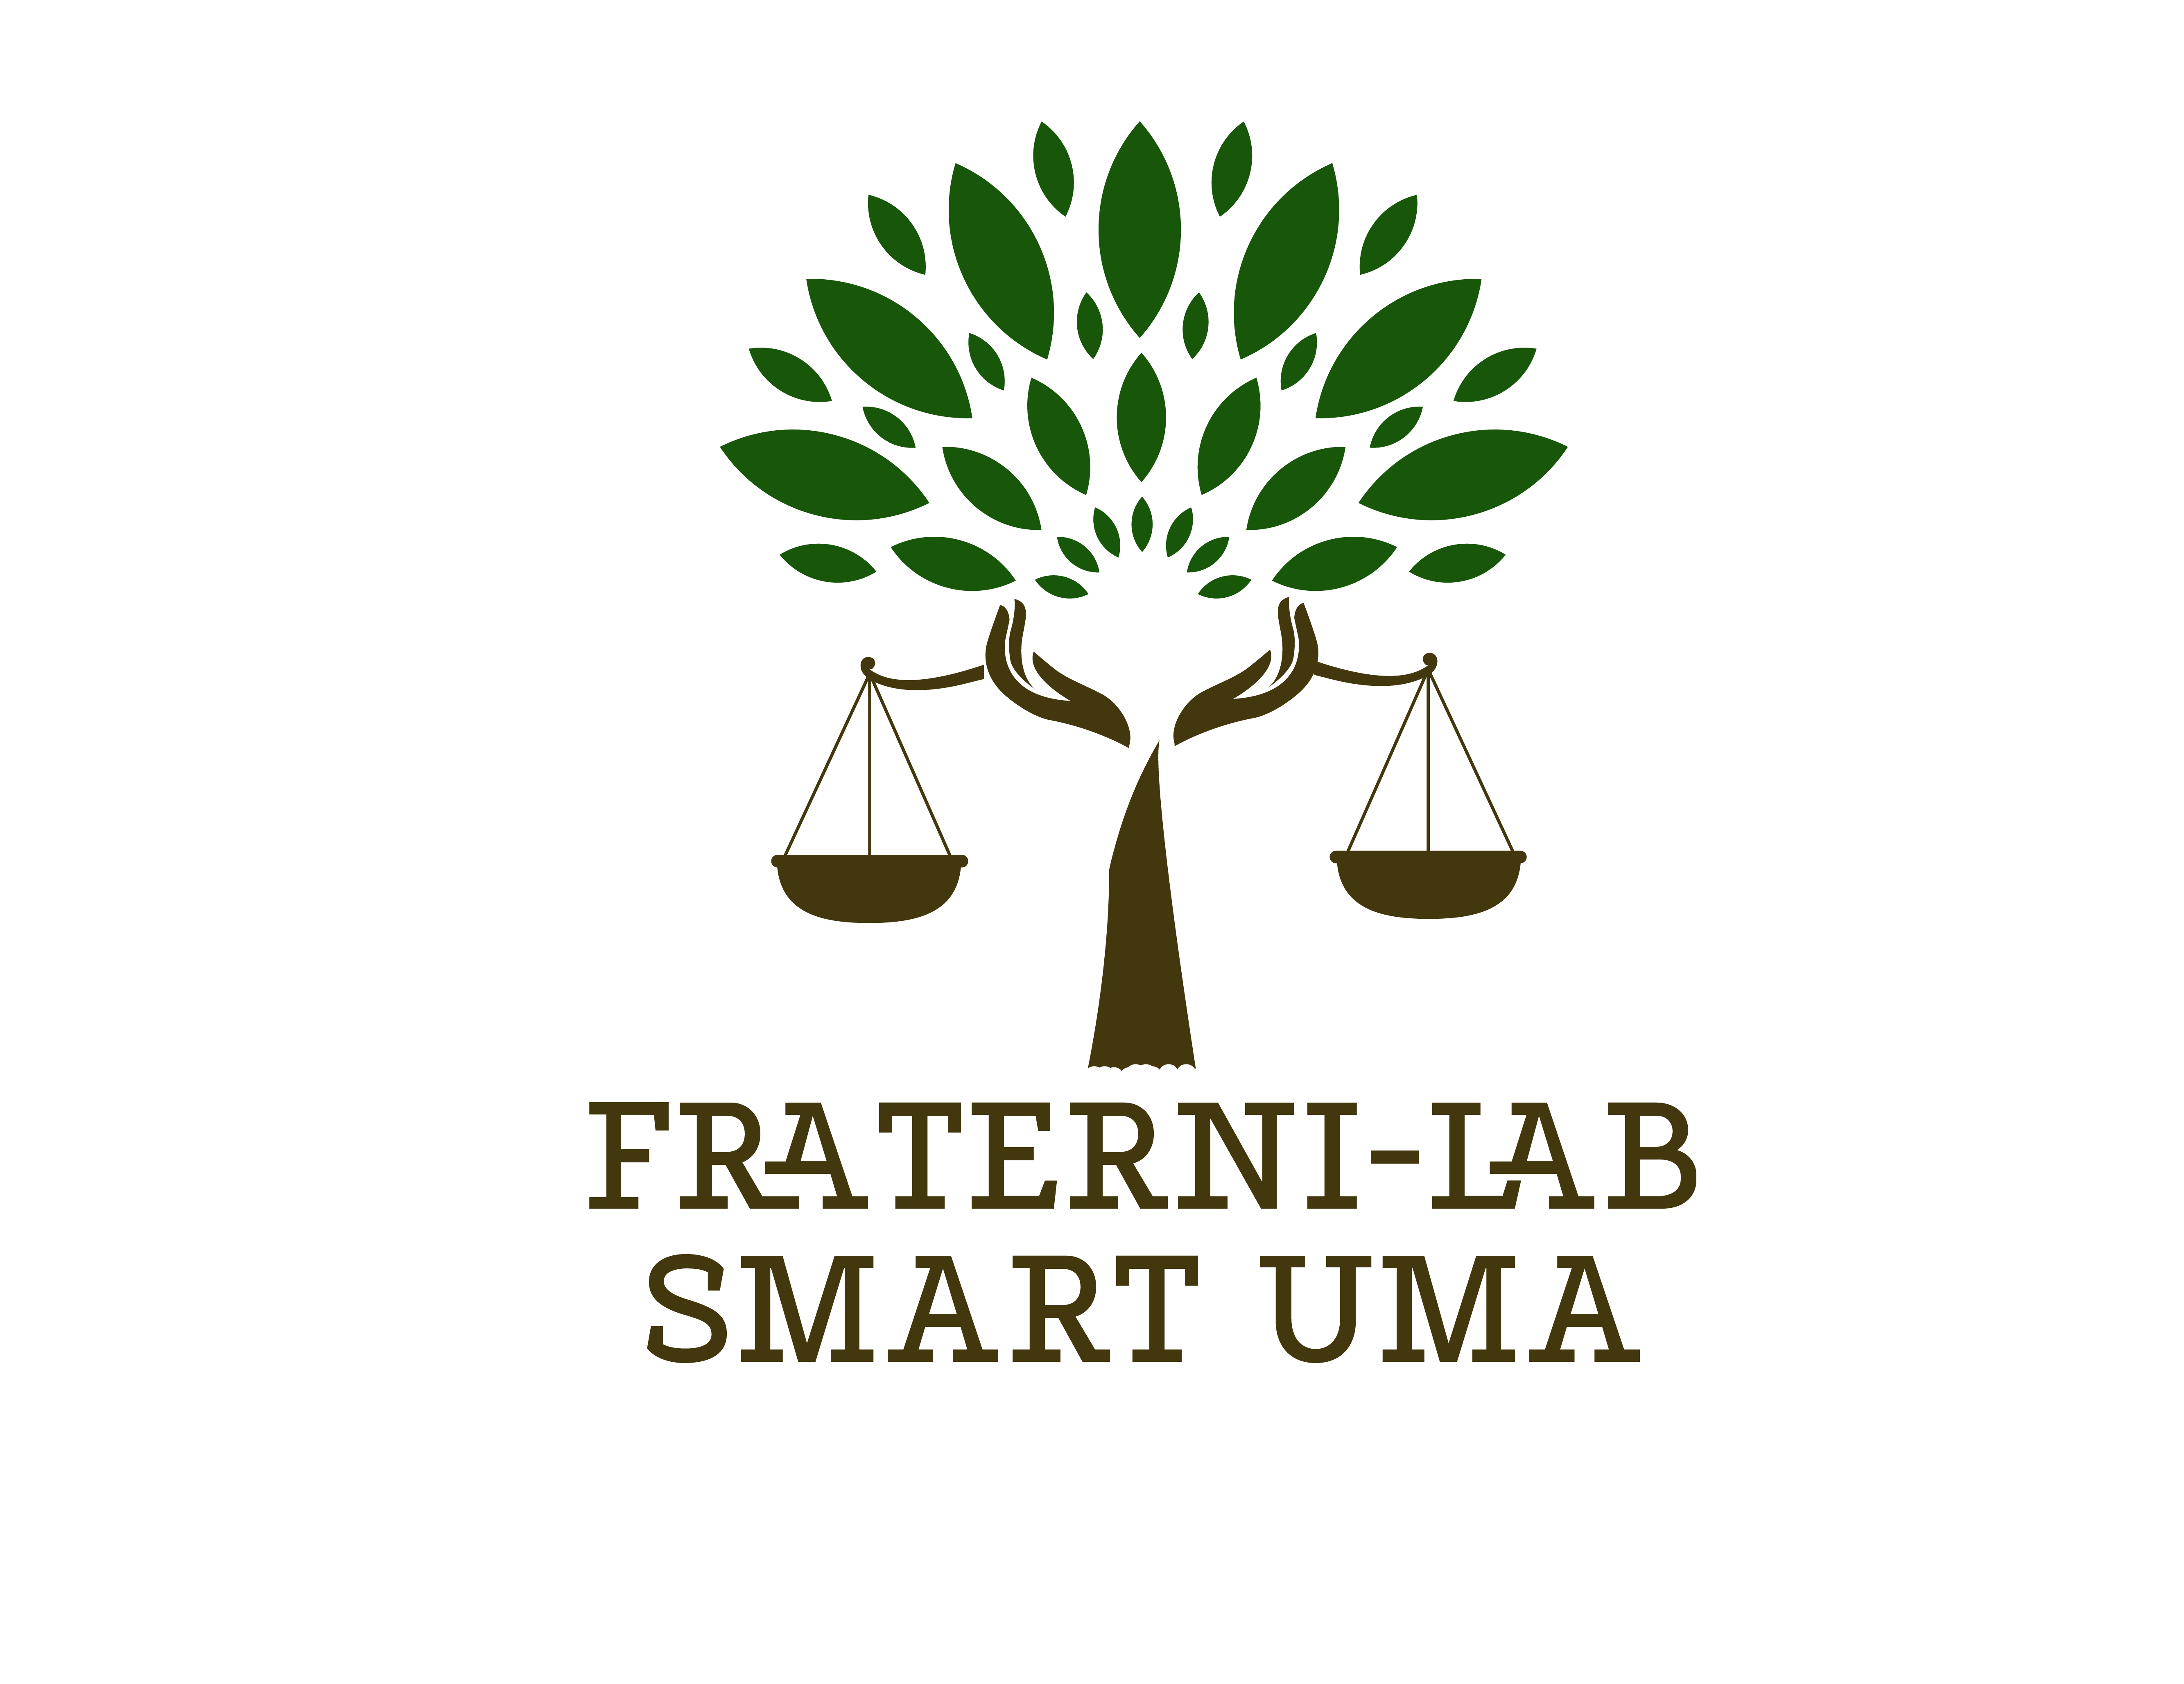 Fraterni-Lab Smart UMA